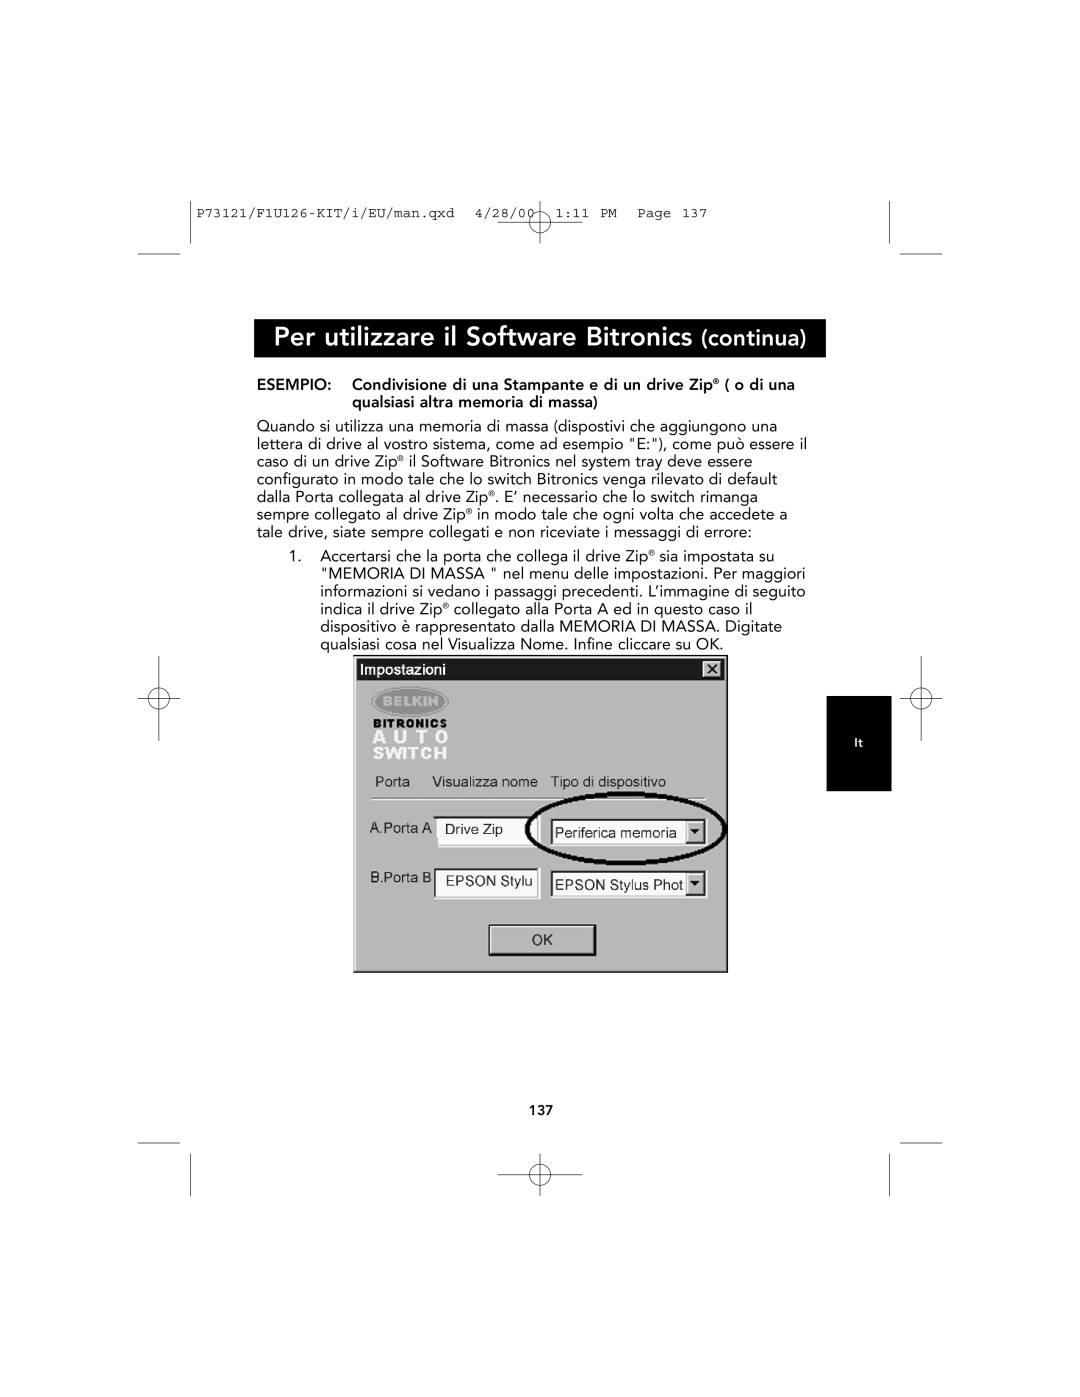 Belkin F1U126-KIT, P73121 user manual Per utilizzare il Software Bitronics continua 